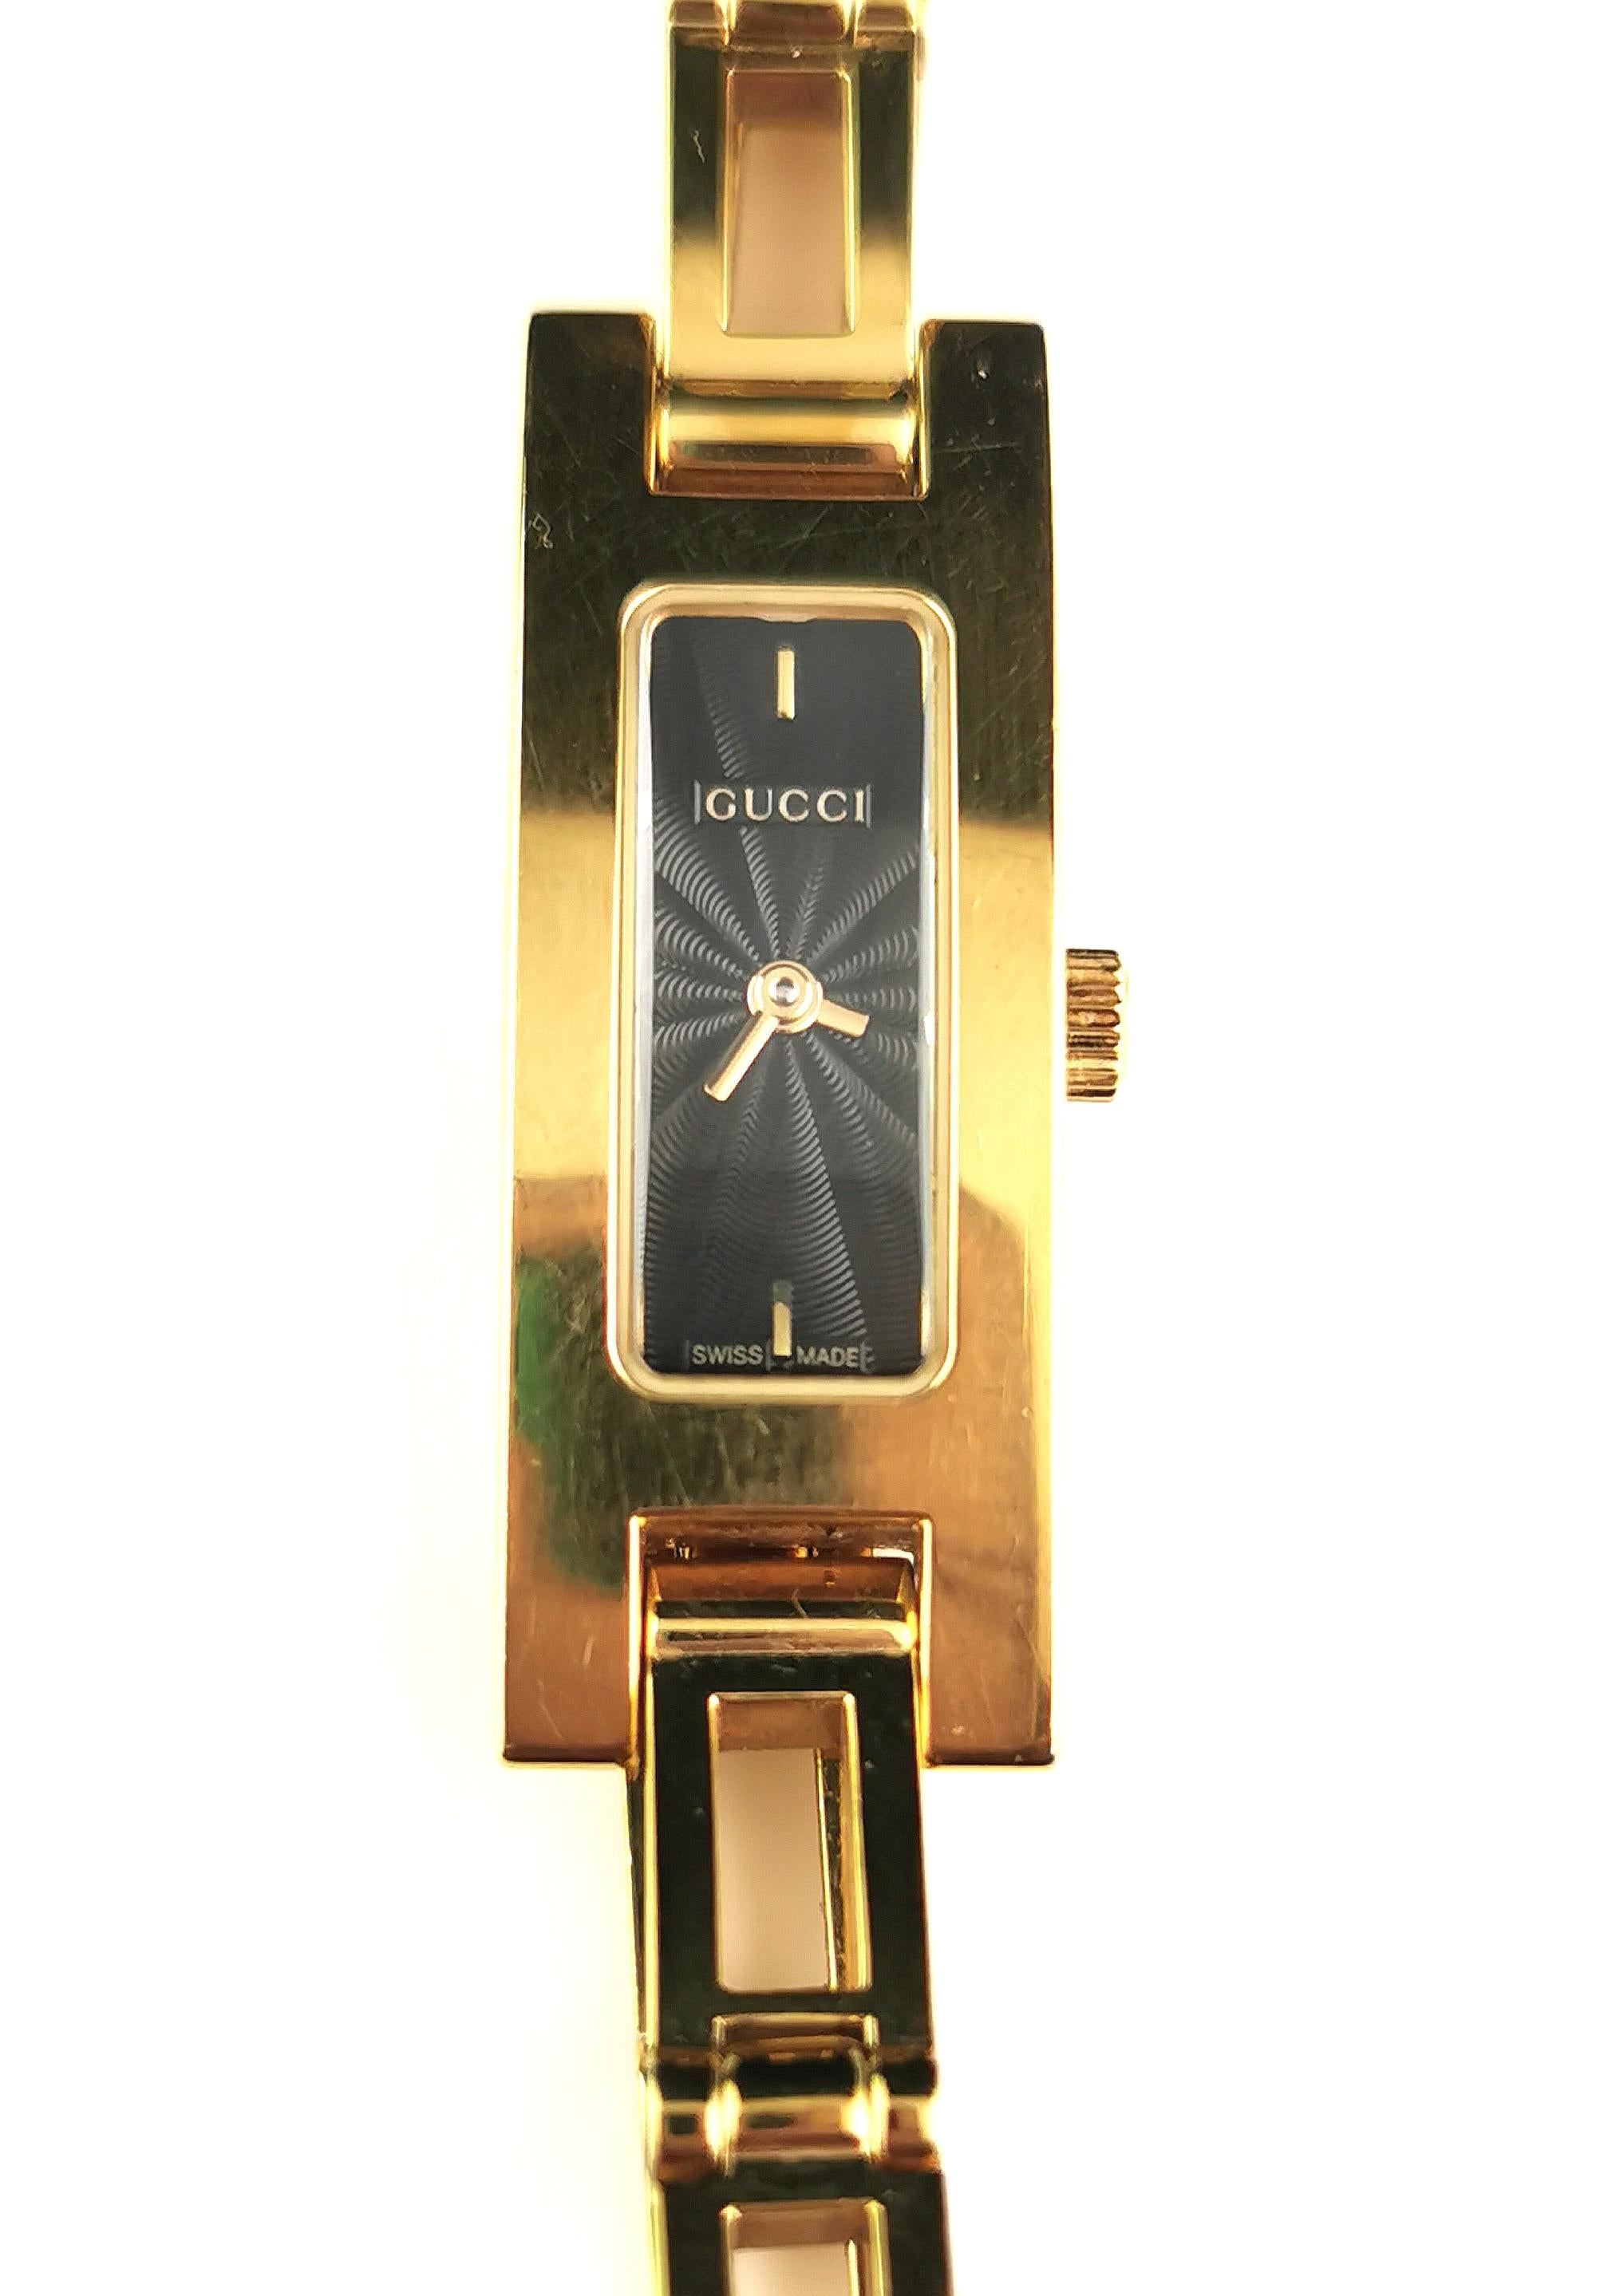 Eine stilvolle Damen Gucci 3900l vergoldet Uhr.

Diese Armbanduhr hat ein elegantes rechteckiges Zifferblatt und ein schwarzes Zifferblatt.

Die meisten haben ein weißes Ziffernblatt, und dieses ist besonders schön.

Sie ist aus vergoldetem